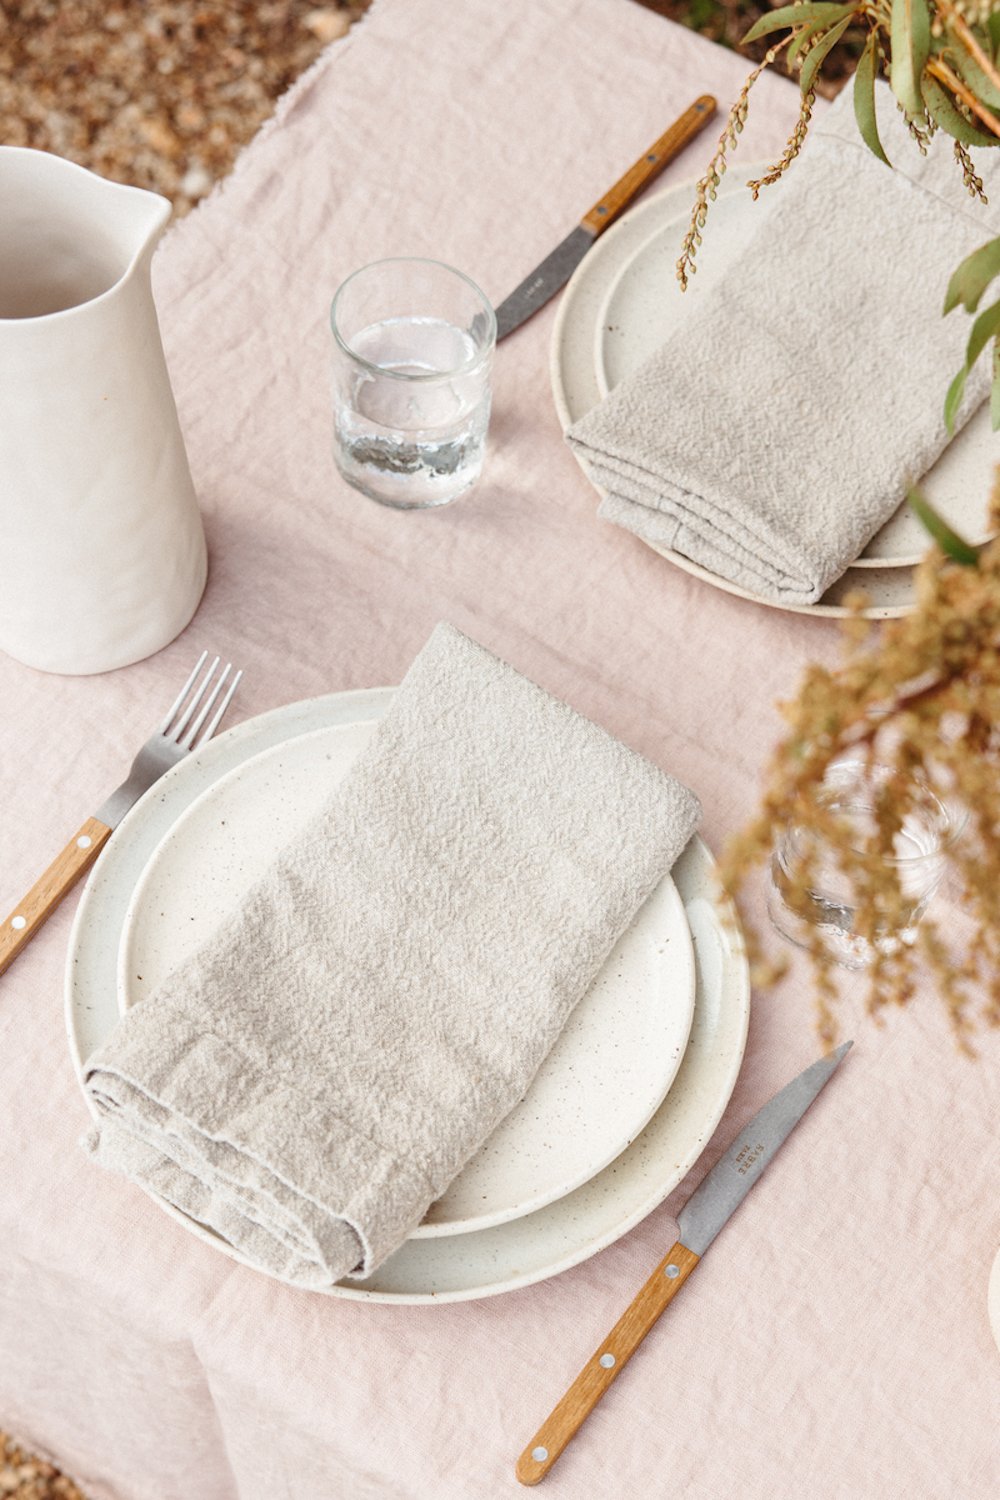 Mesa sencilla sobre un mantel de lino rosa con dos platos blancos, servilletas de lino gris, tenedores y cuchillos.